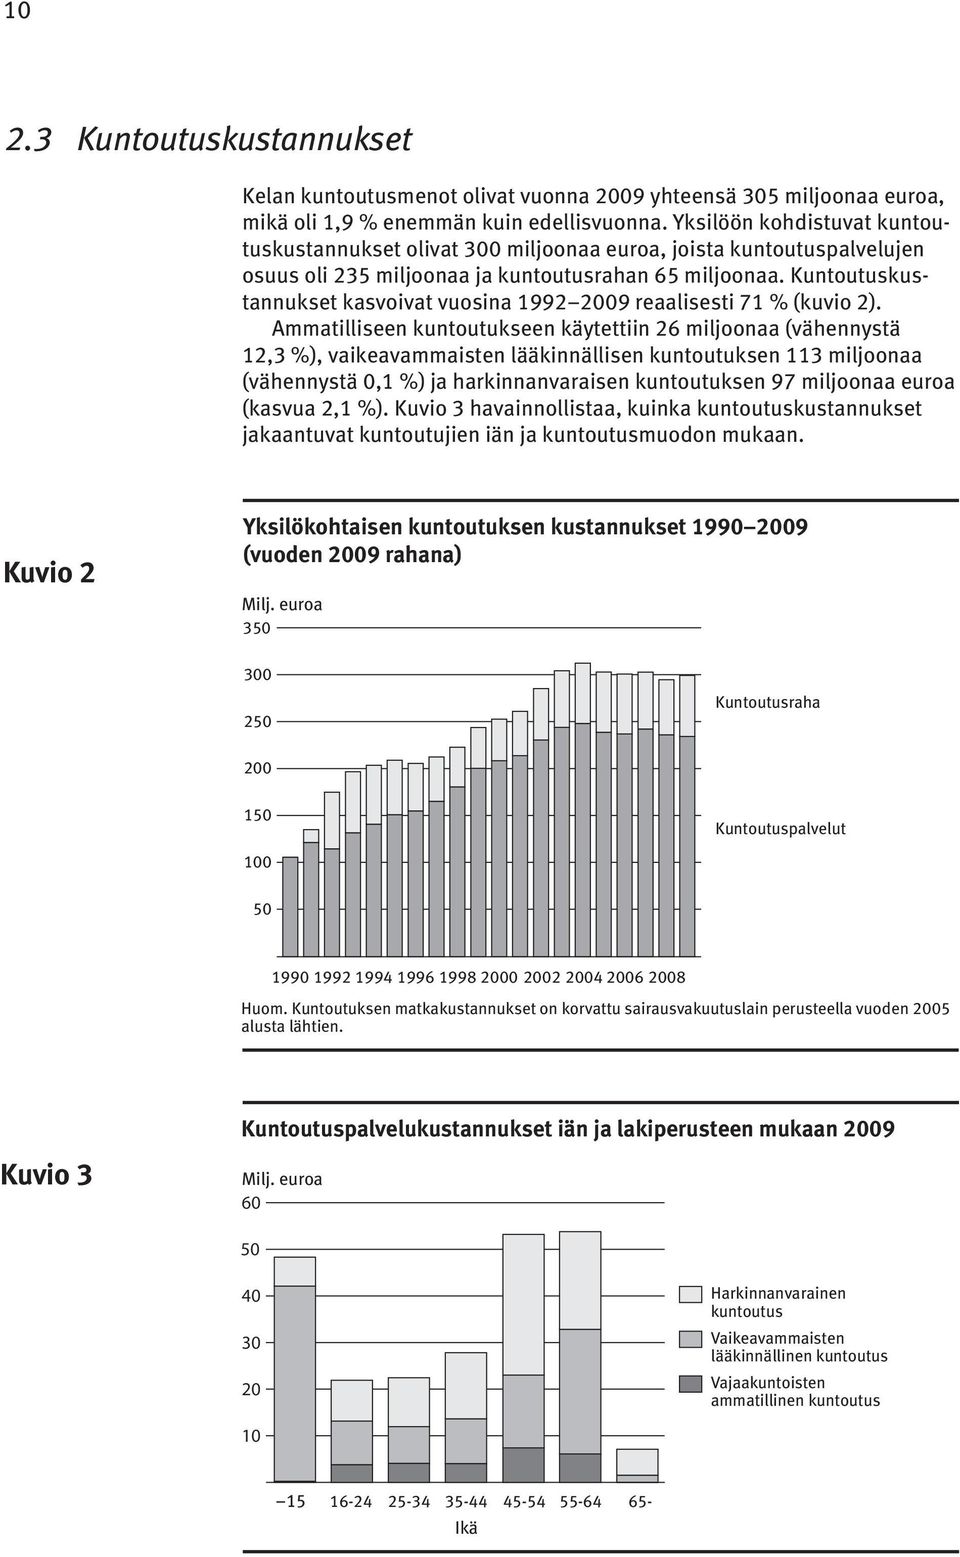 Kuntoutuskustannukset kasvoivat vuosina 1992 2009 reaalisesti 71 % (kuvio 2).